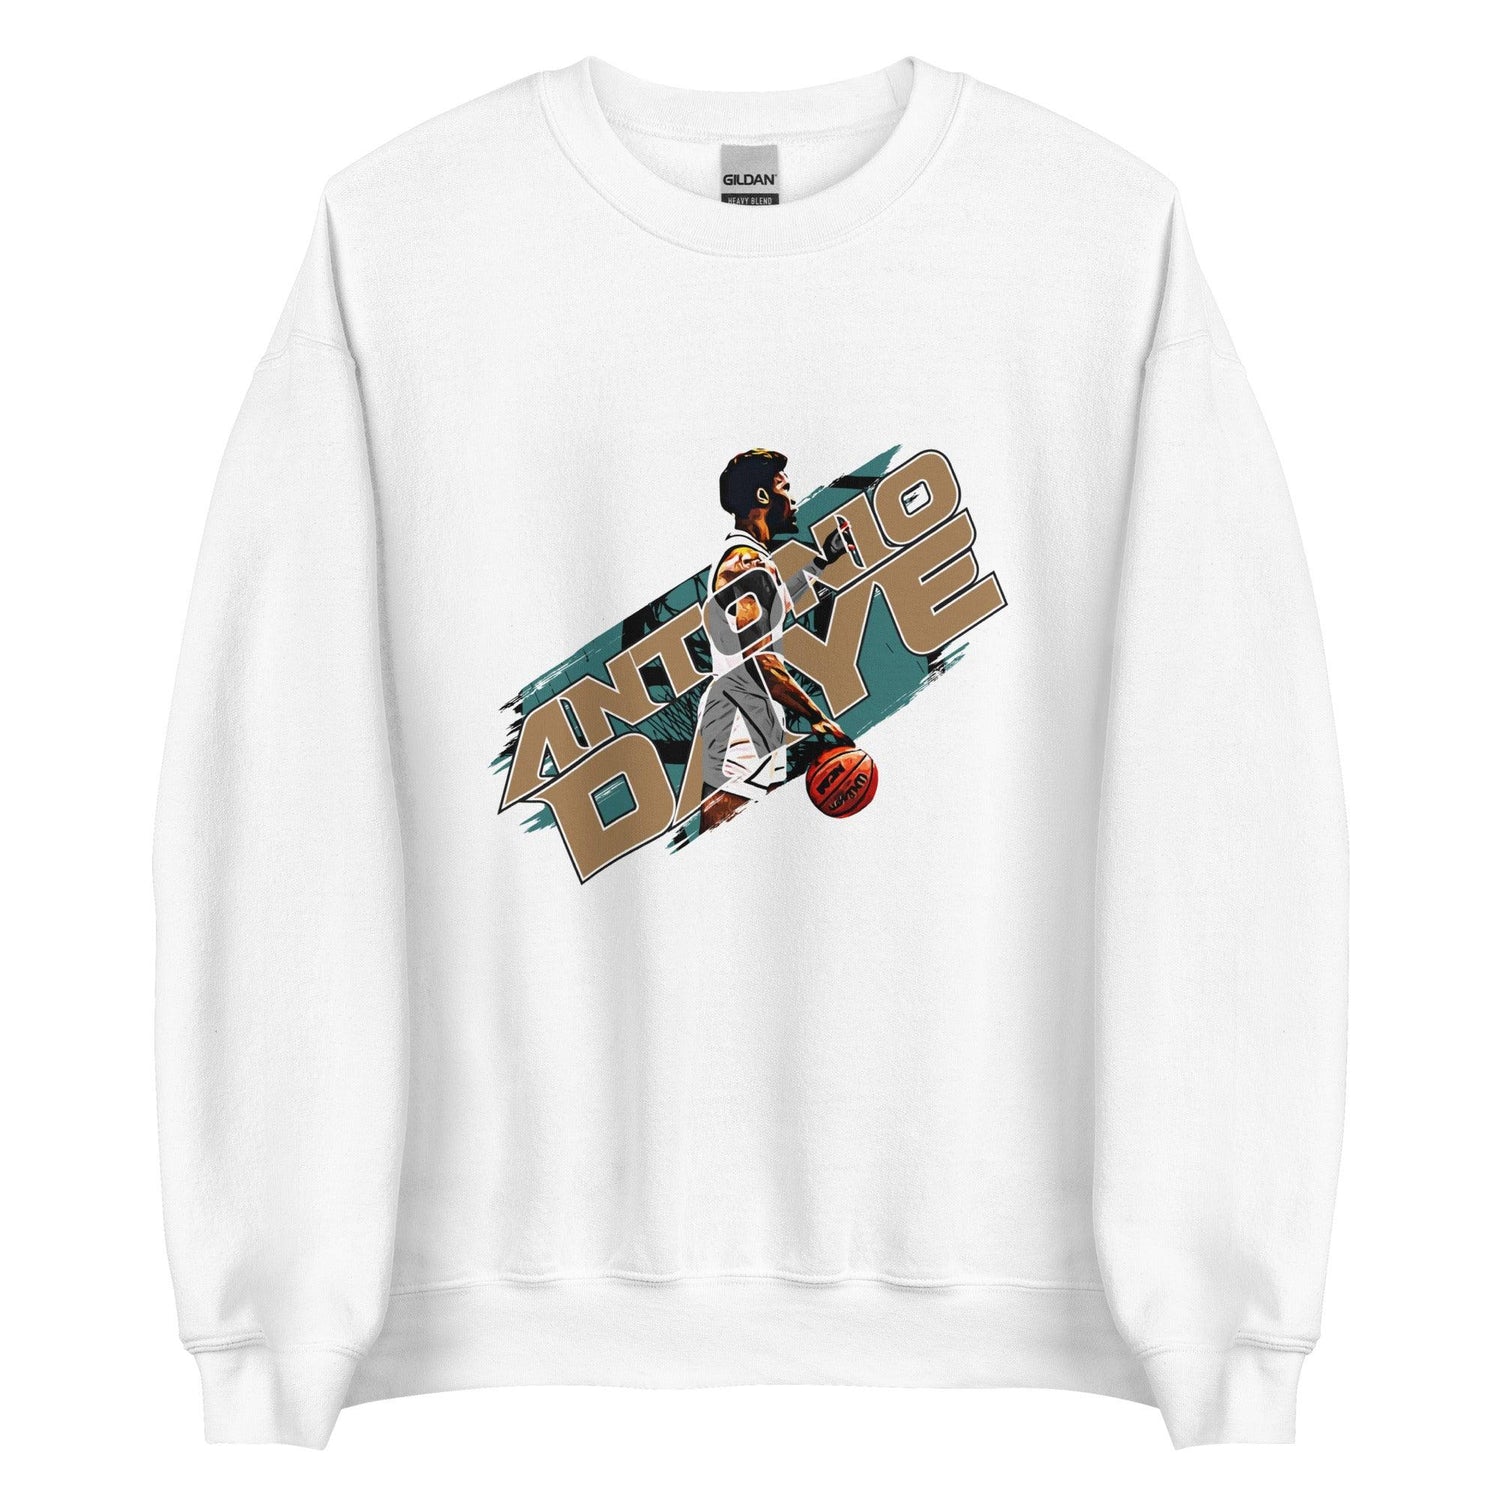 Antonio Daye “Essential” Sweatshirt - Fan Arch